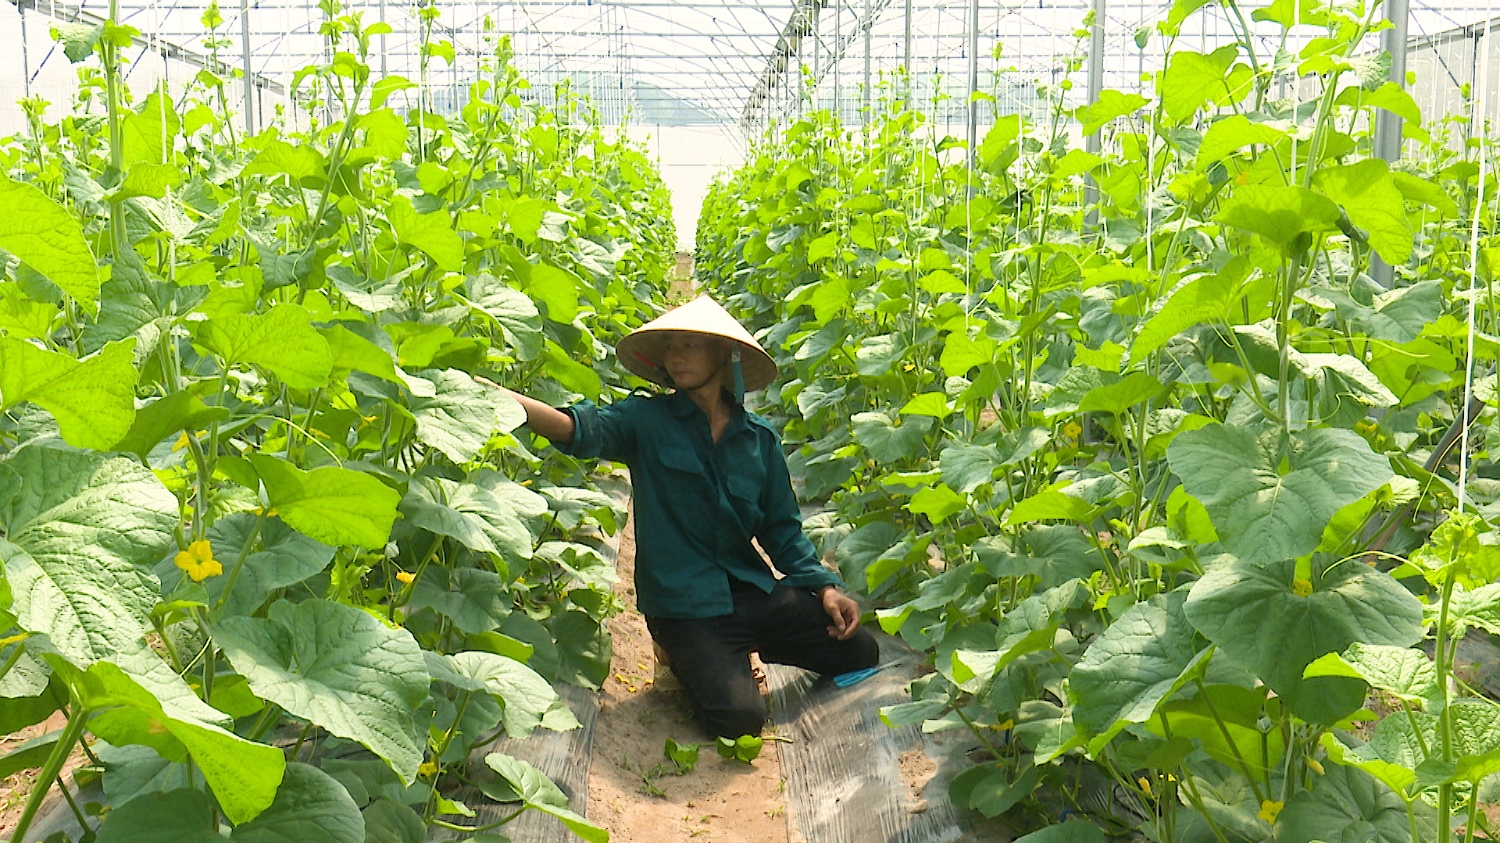 Anh Võ Minh Sáng, TDP Chính Trực, phường Quảng Long mạnh dạn đầu tư phát triển nông nghiệp theo hướng tập trung, quy mô lớn, đạt hiệu quả kinh tế cao